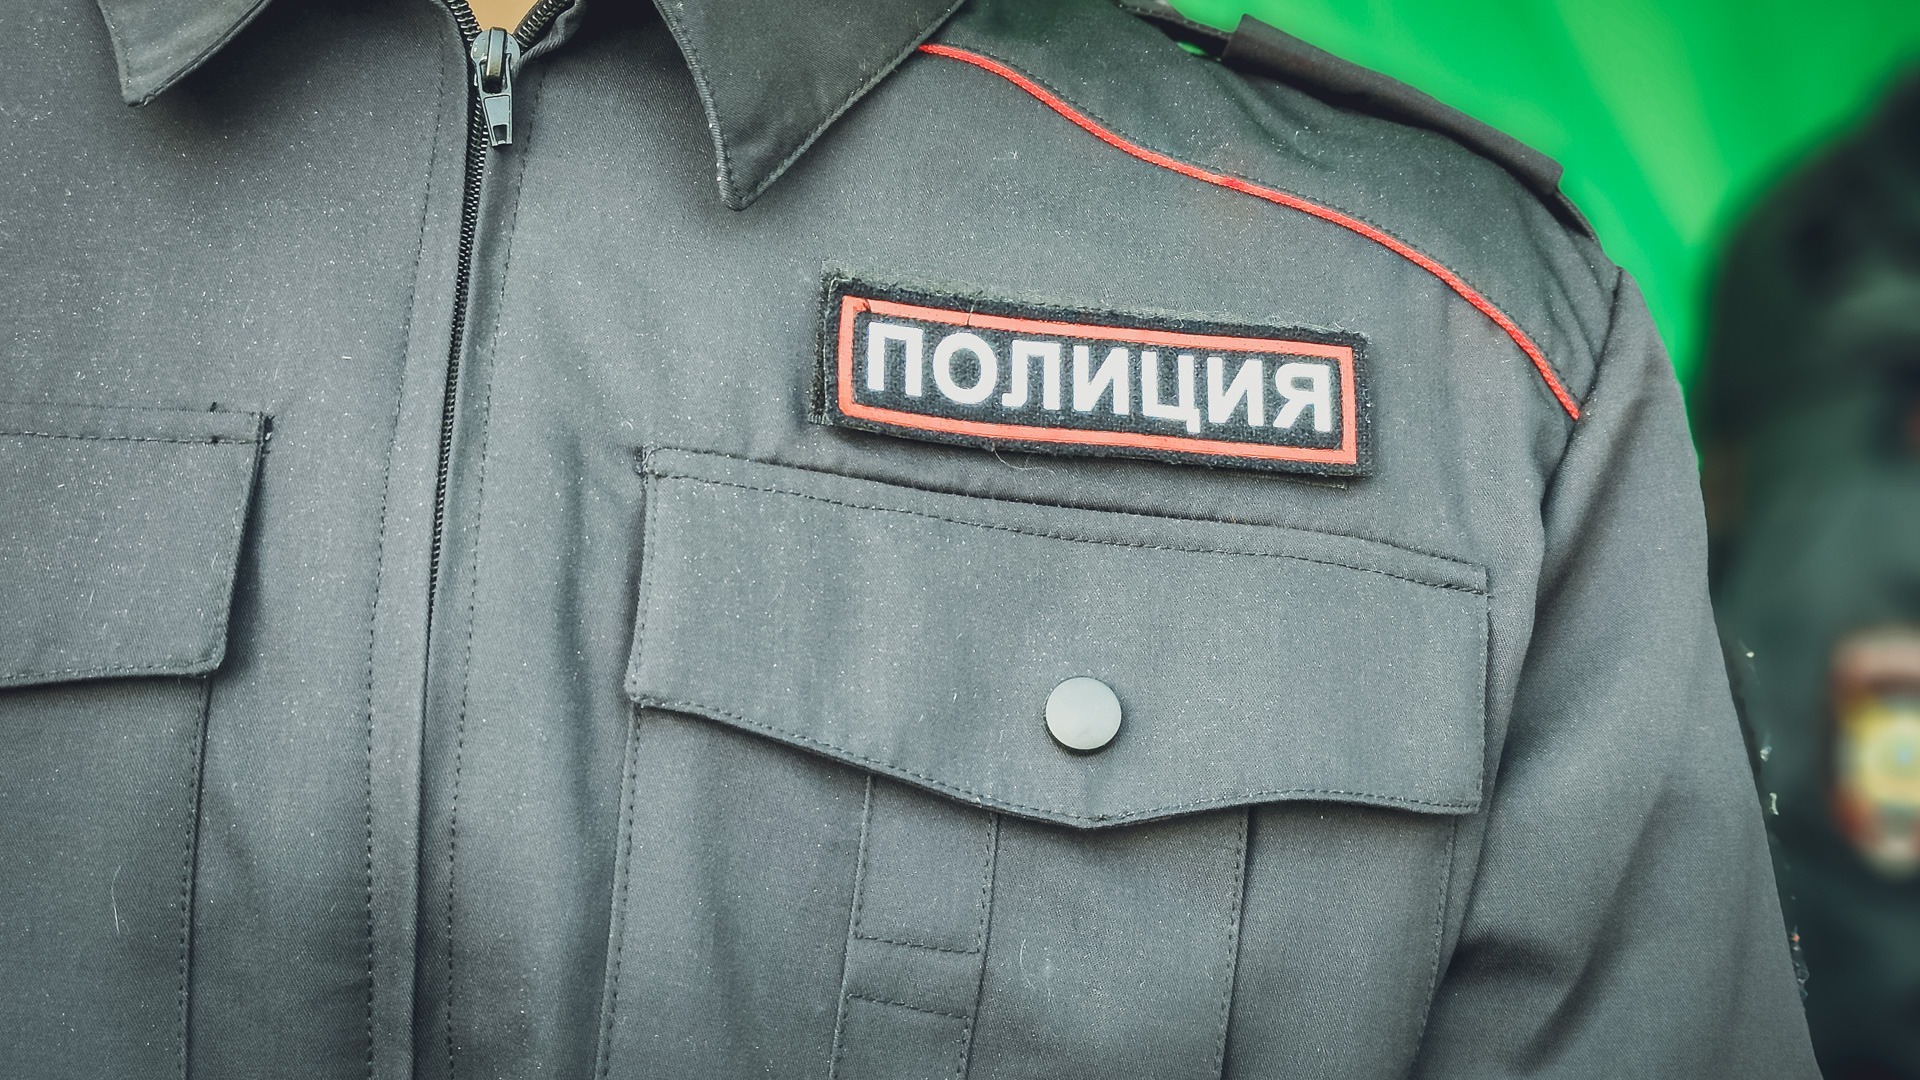 В Приморском крае задержали подозреваемого в краже умной колонки